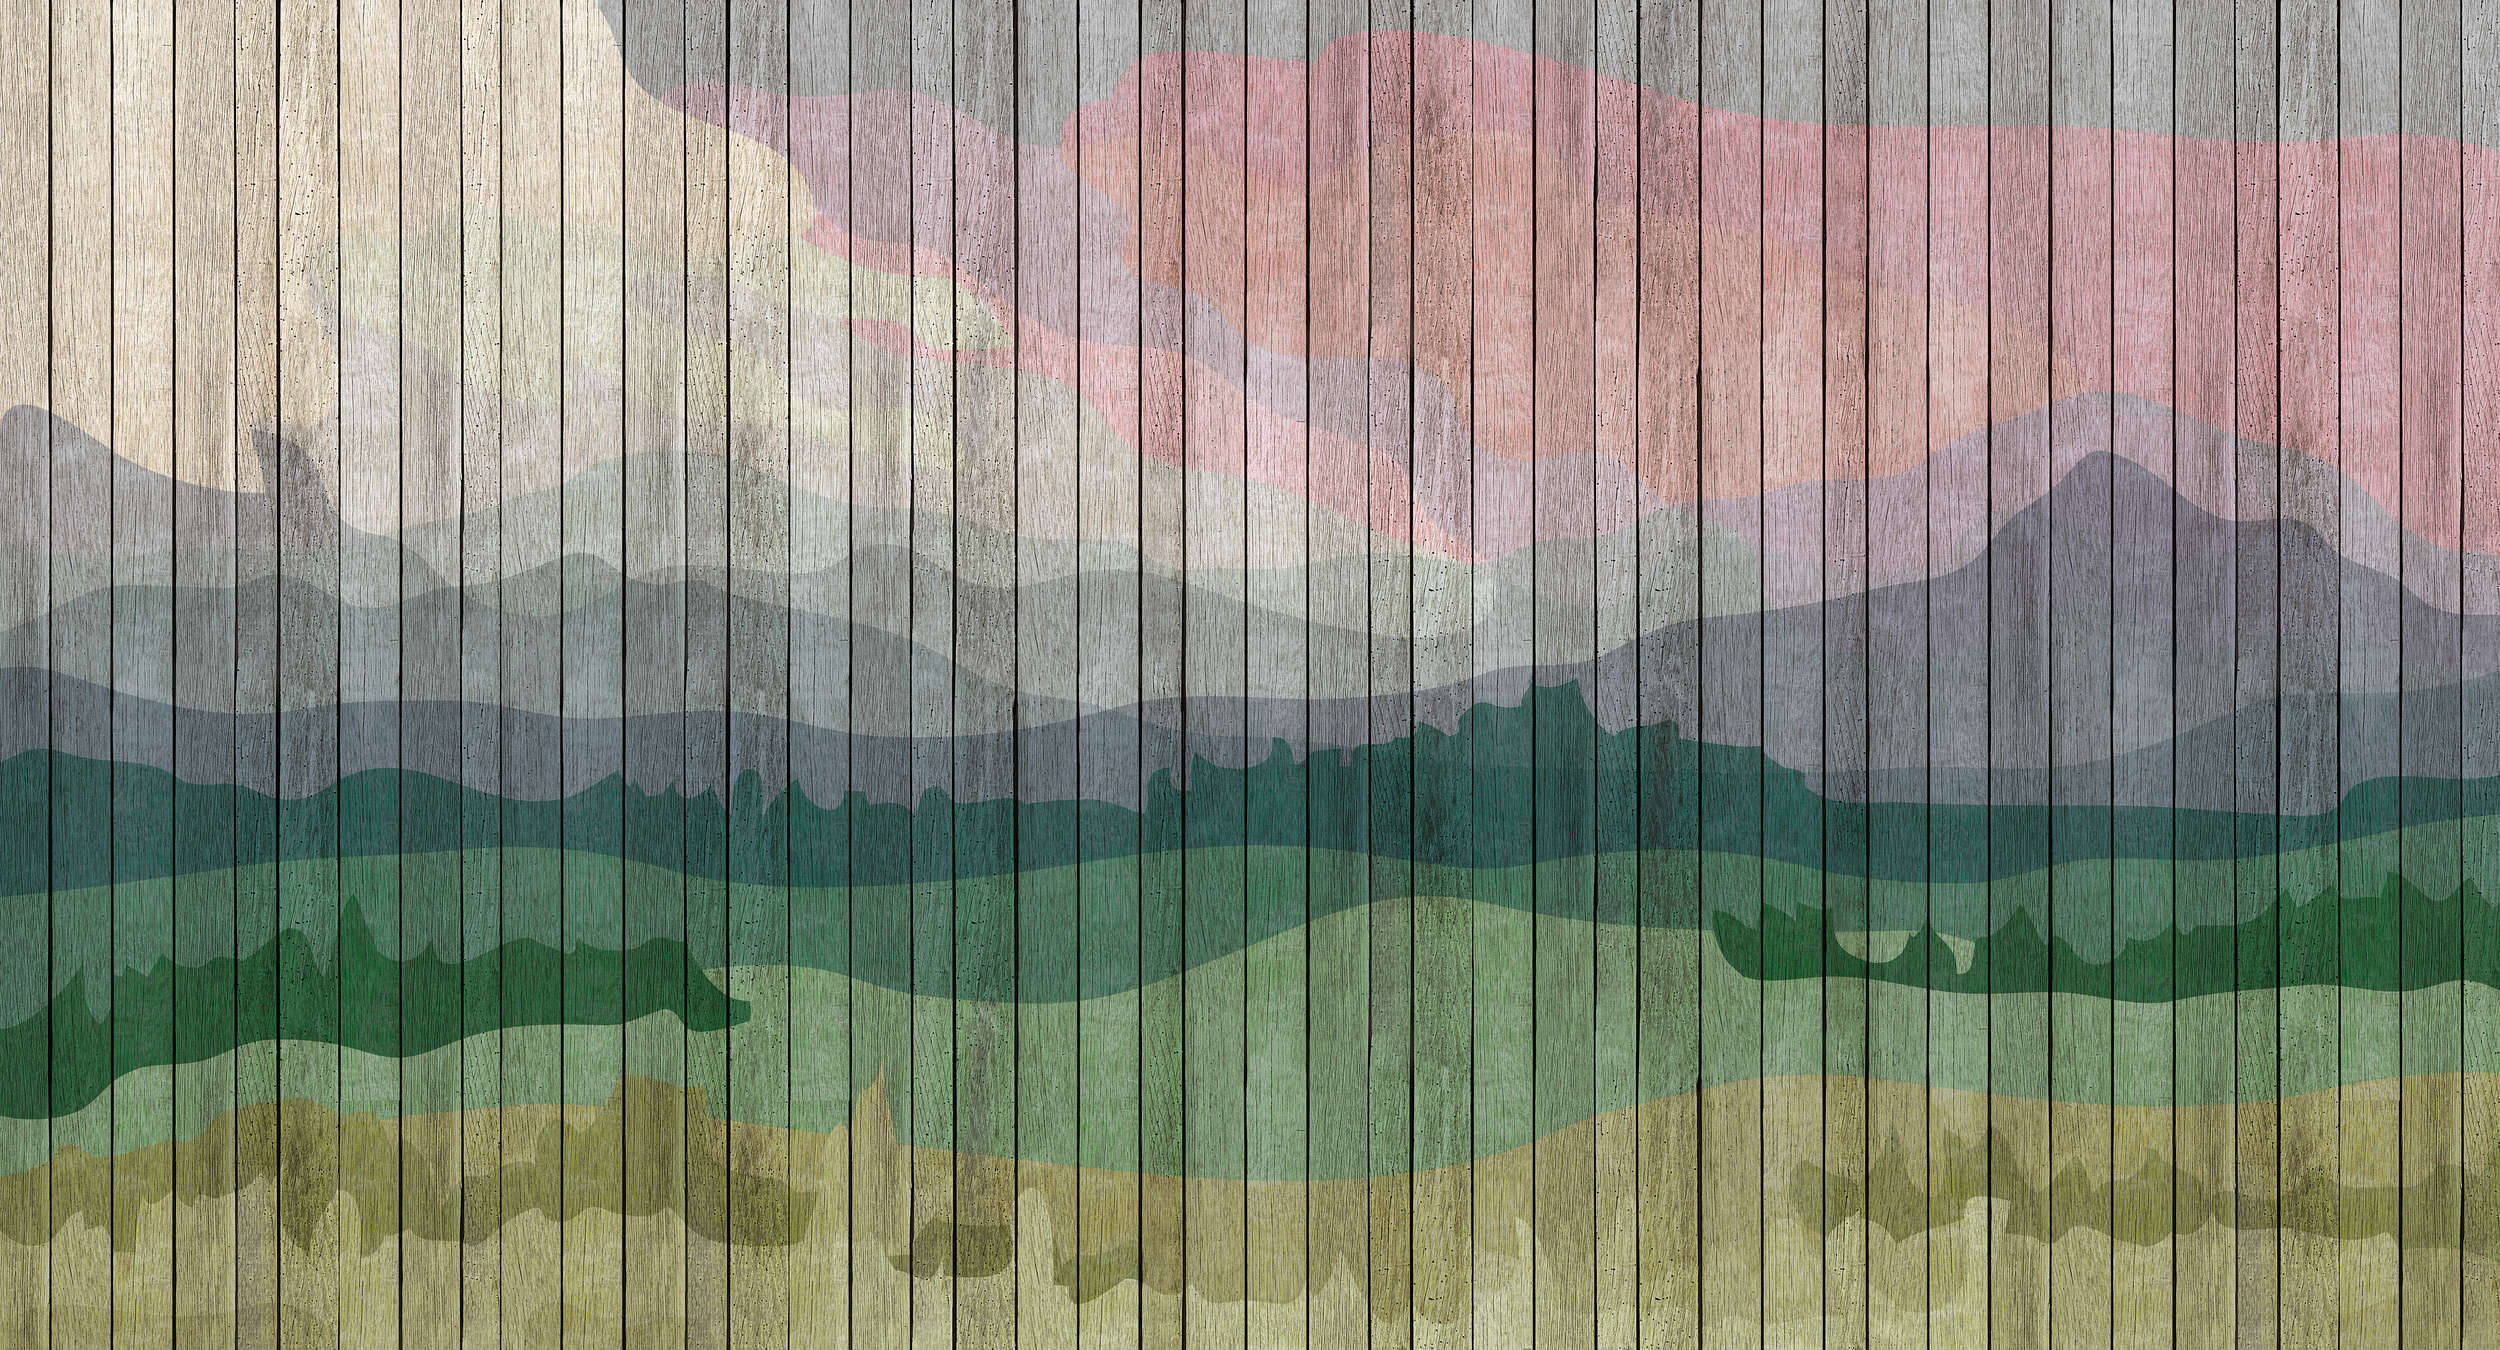             Mountains 2 - Modern Wallpaper Mountain Landscape & Board Optics - Beige, Blue | Matt Smooth Non-woven
        